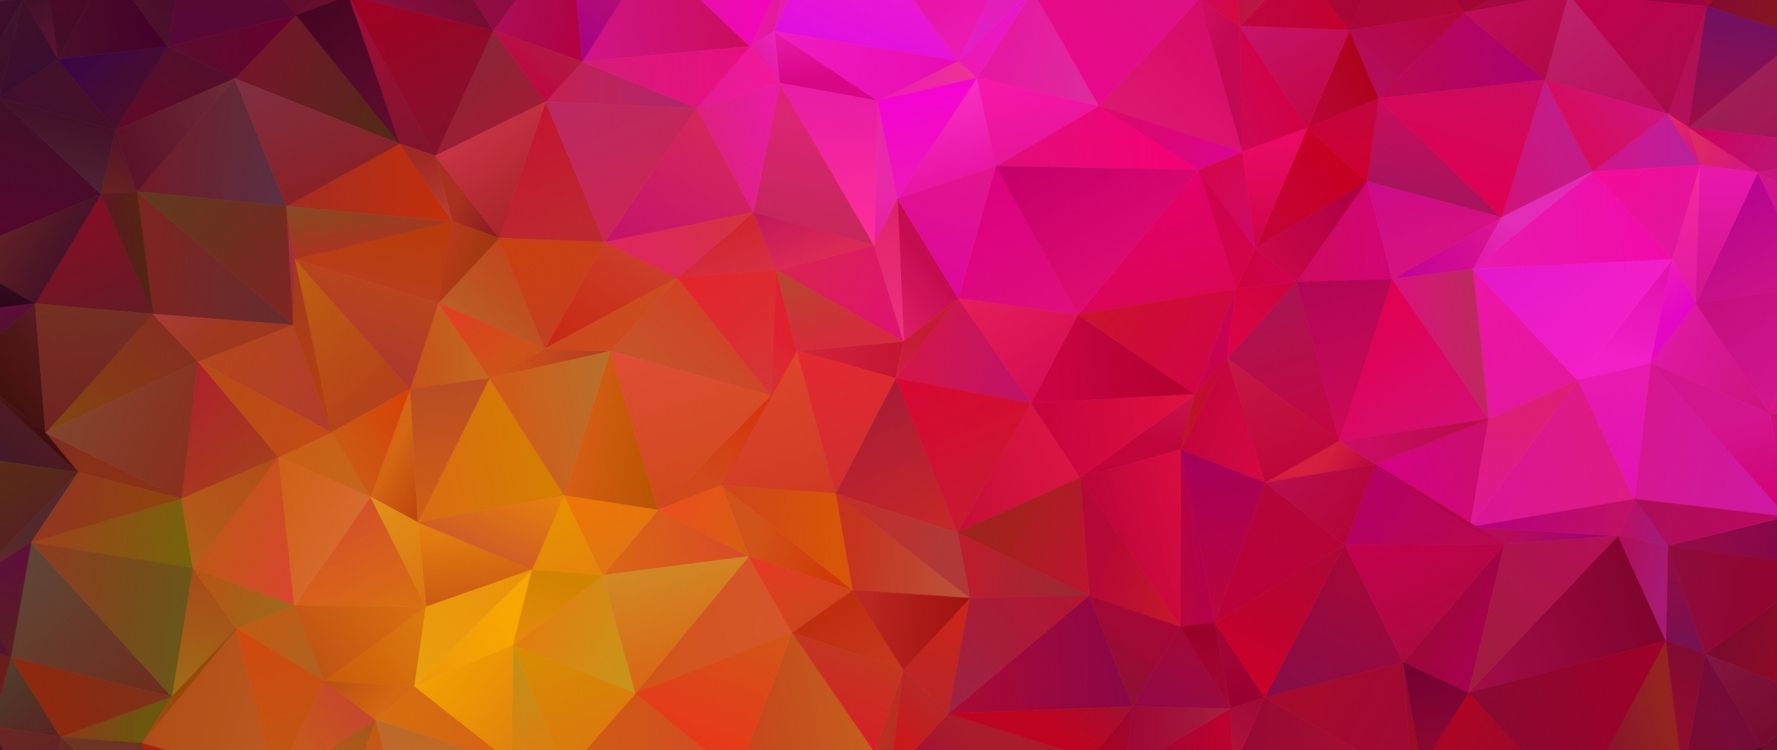 三角形, 粉红色, 品红色, 对称, 抽象艺术 壁纸 2560x1080 允许